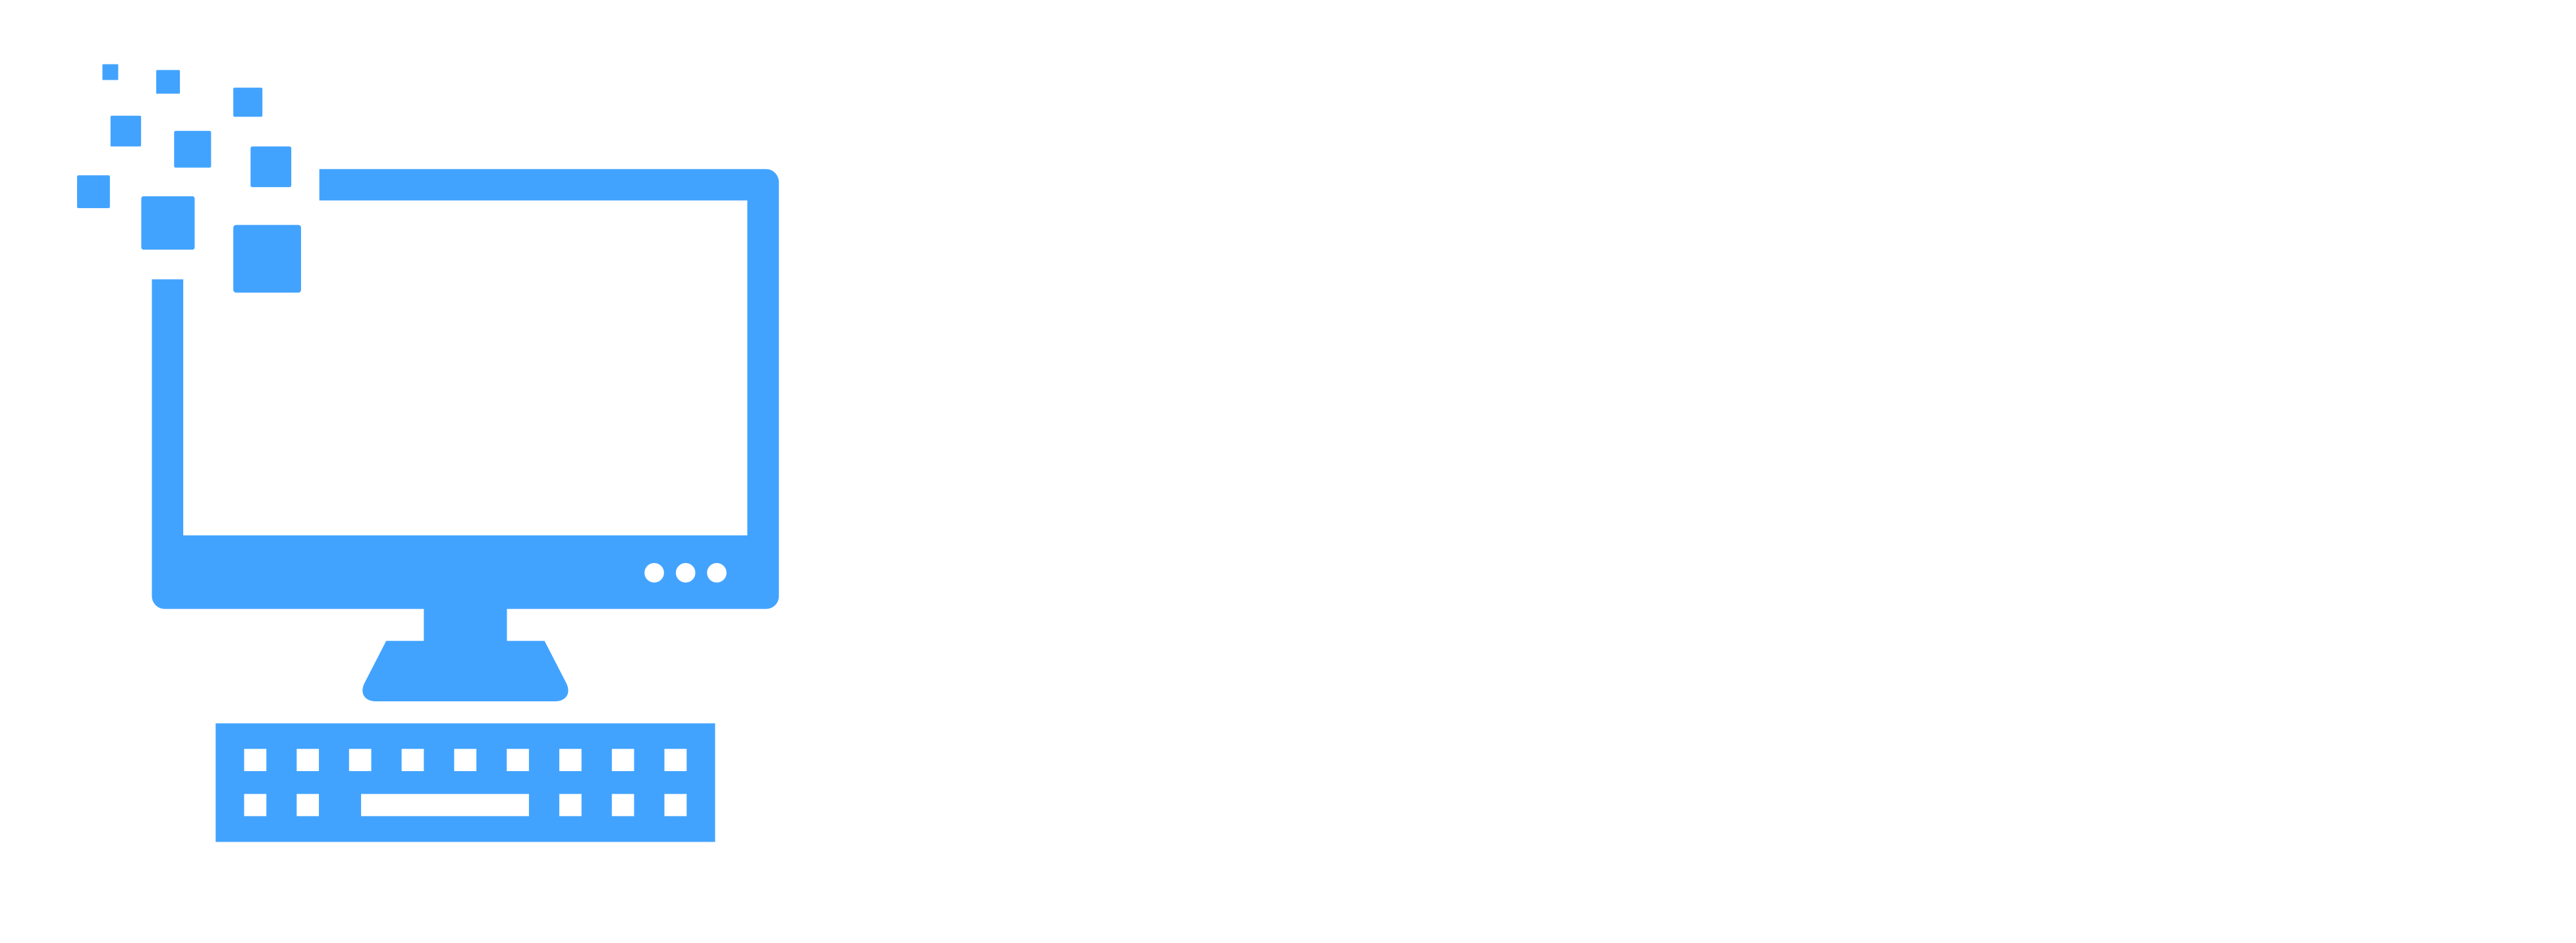 PC Zoeker